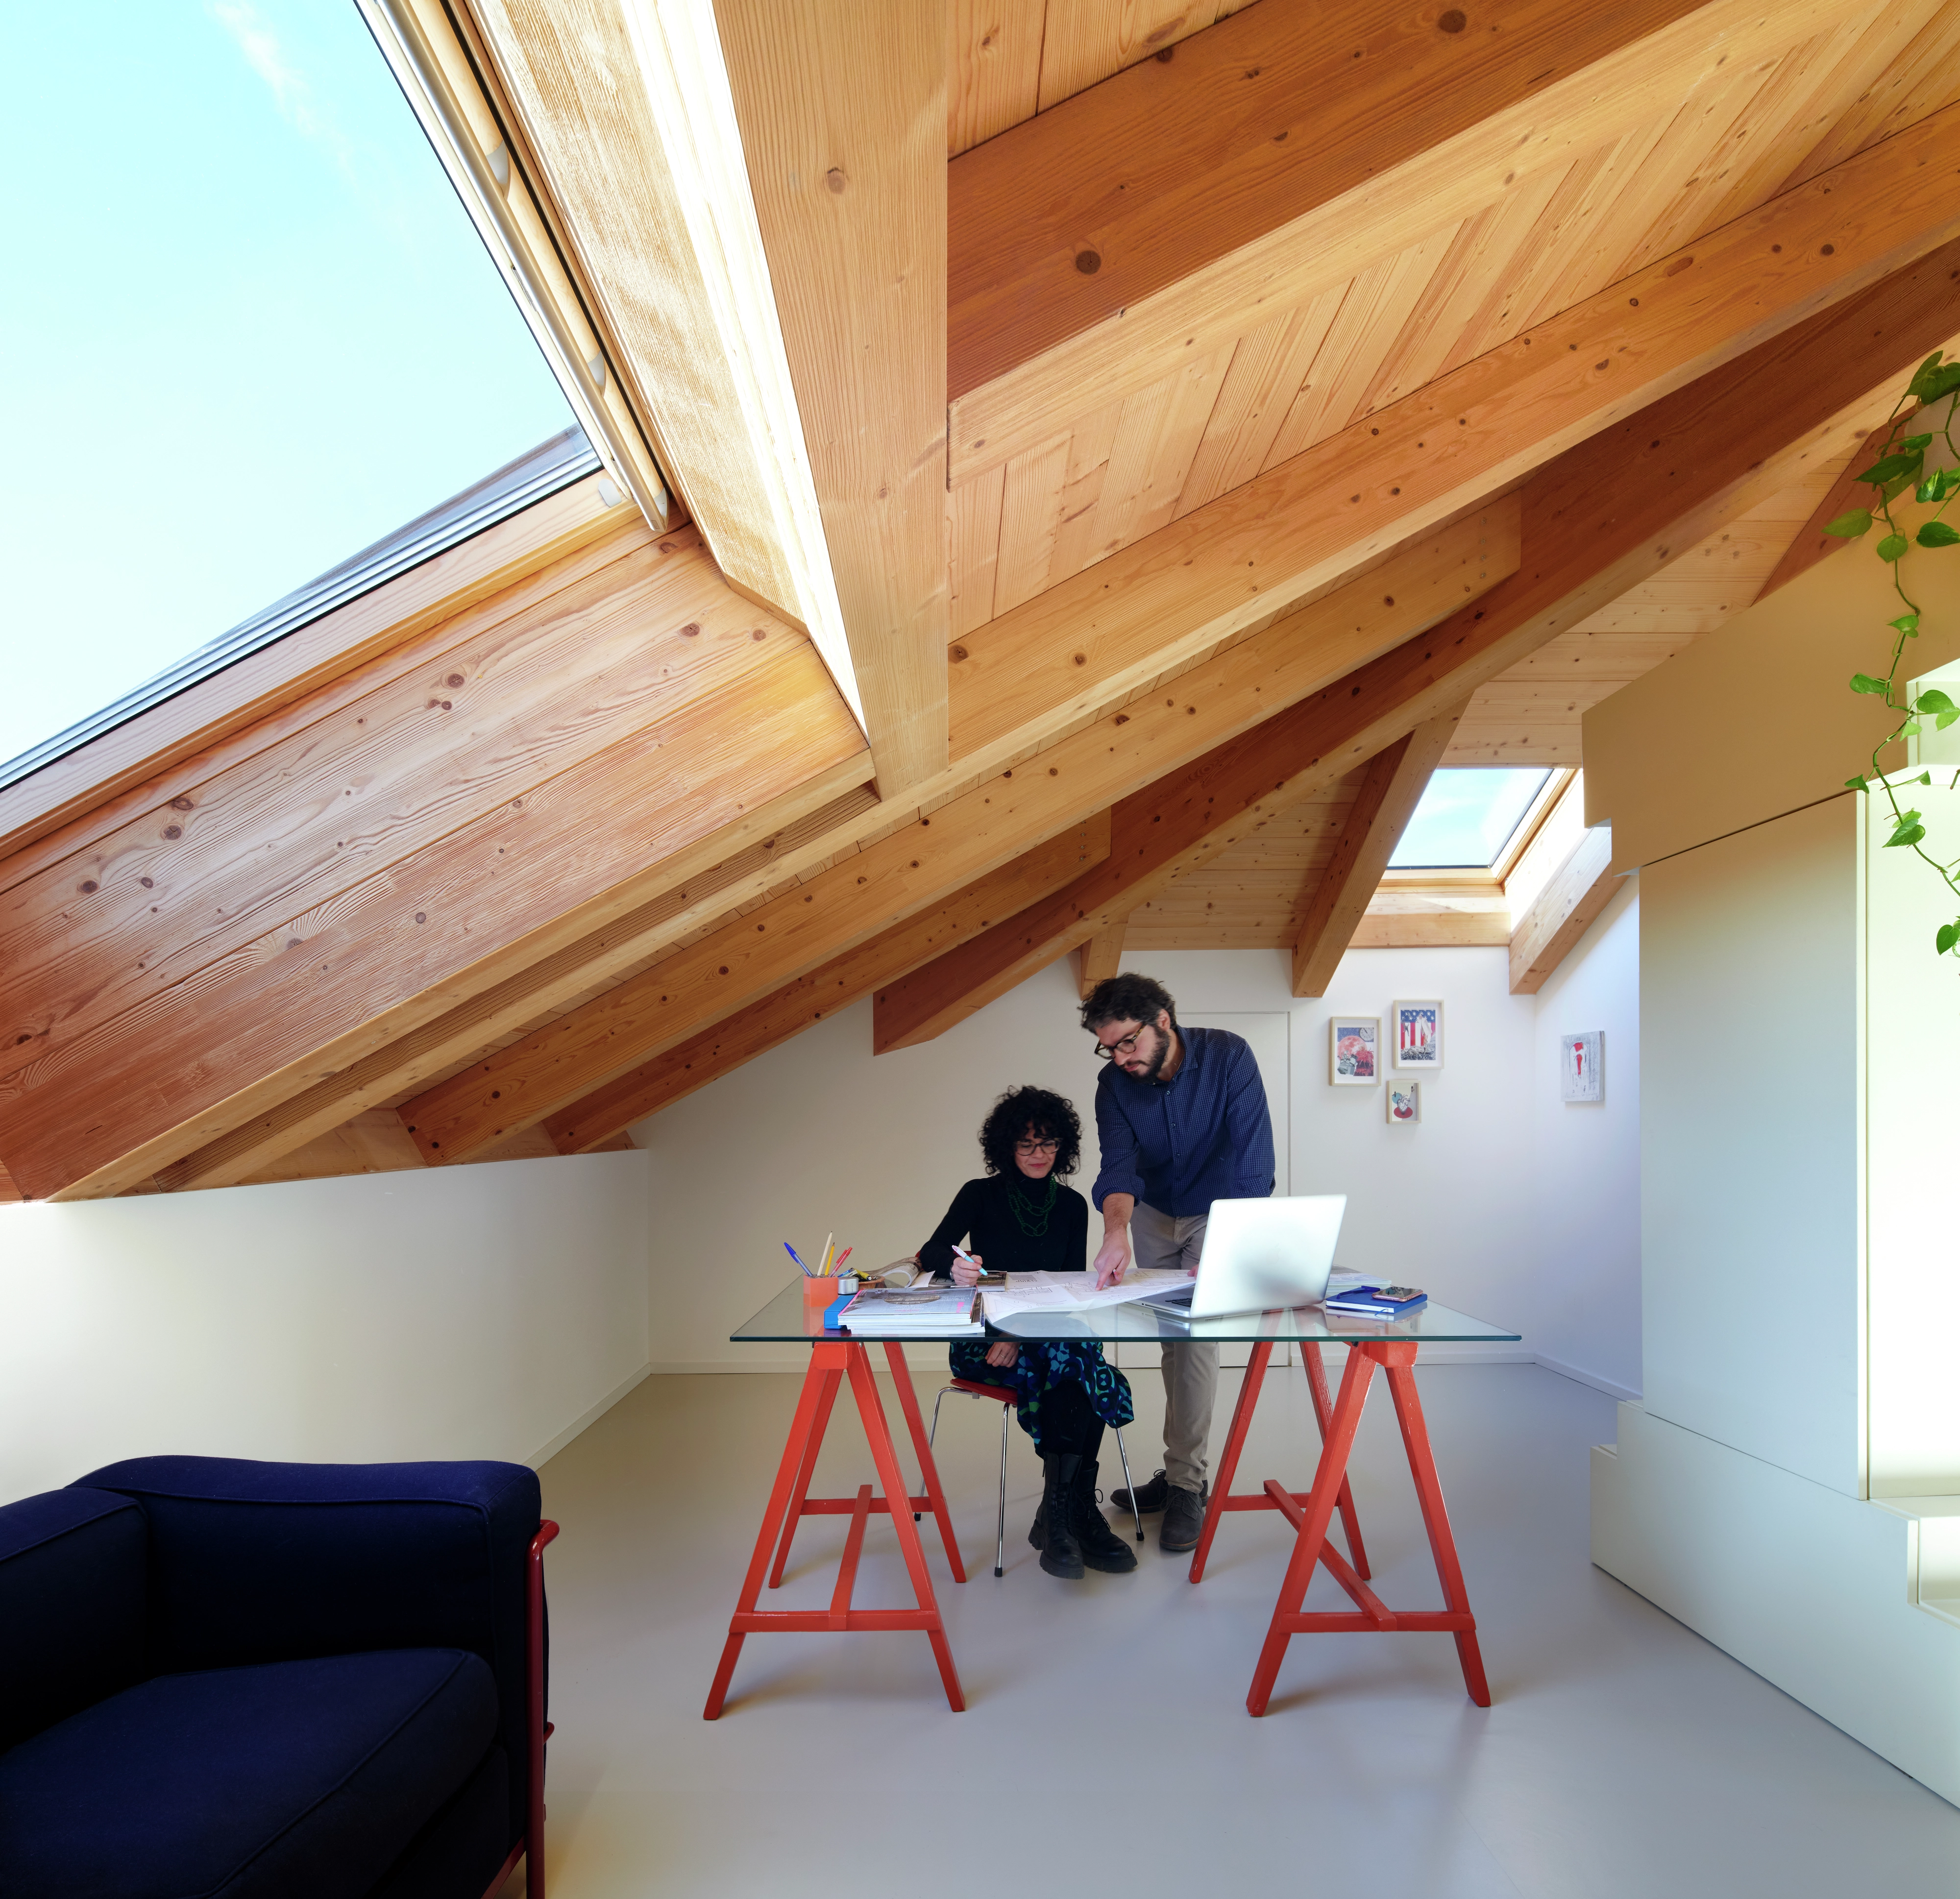 Ufficio domestico mansarda con travi in legno e finestra VELUX, scrivania moderna e decorazione minimalista.